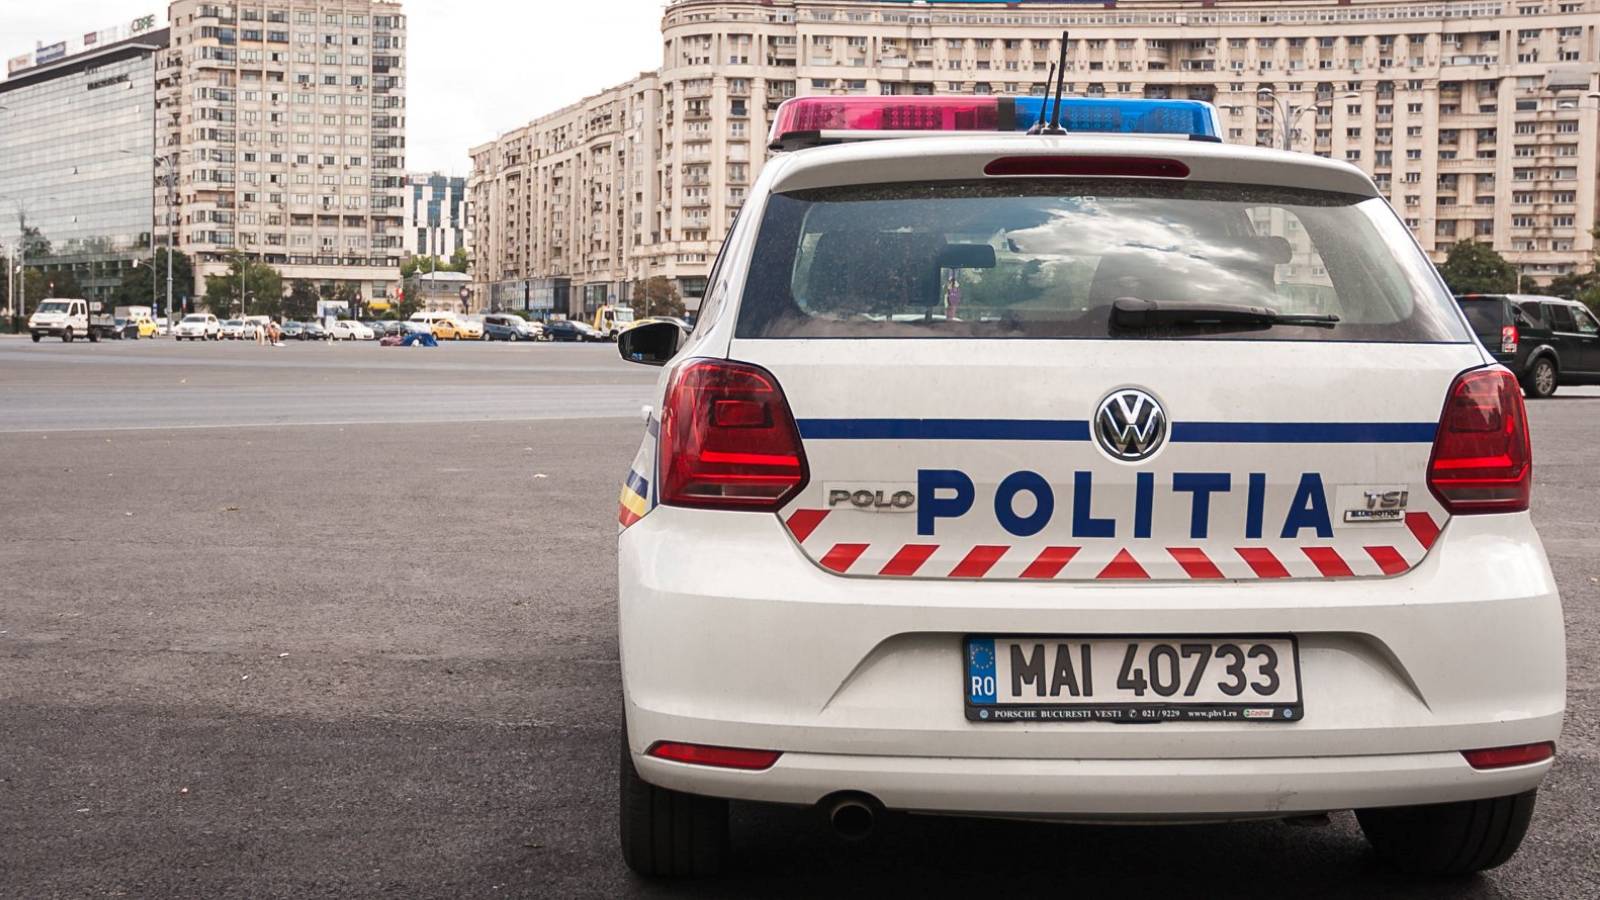 Roemeense politie waarschuwt voor valse politieagenten